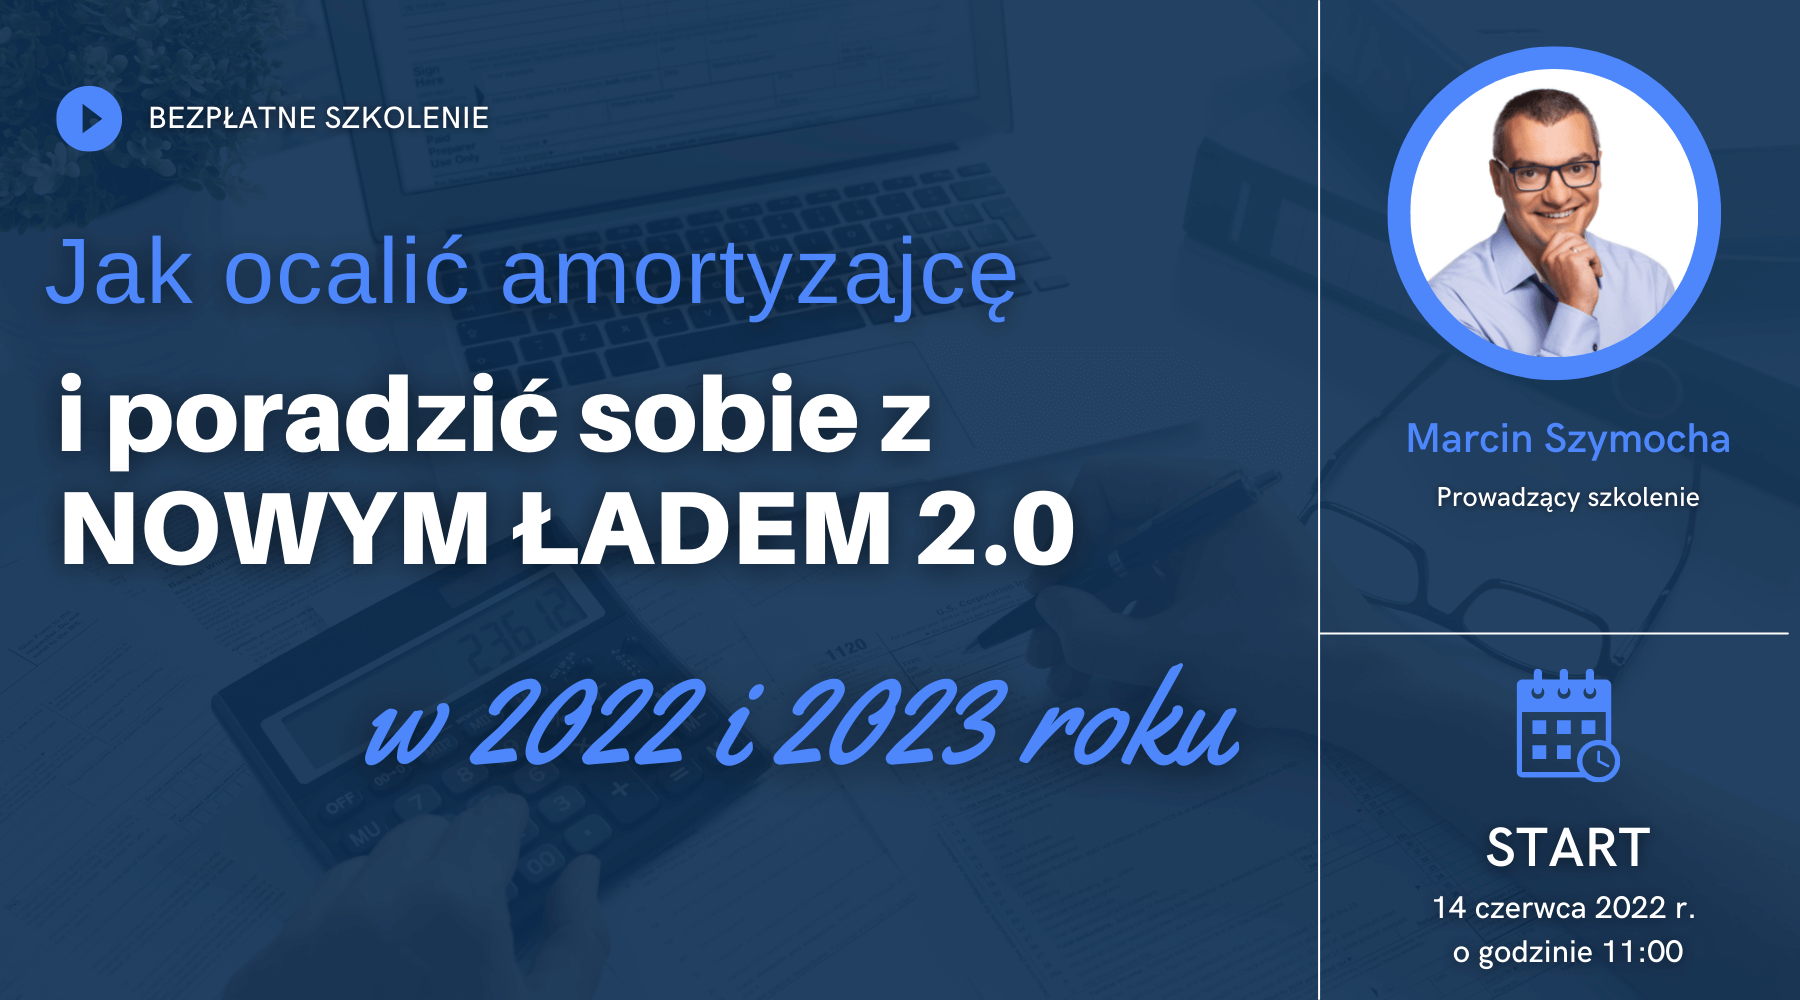 Akademia Mieszkanicznika - 14.06.2022 - Jak ocalić amortyzację i poradzić sobie z Nowym Ładem 2.0?